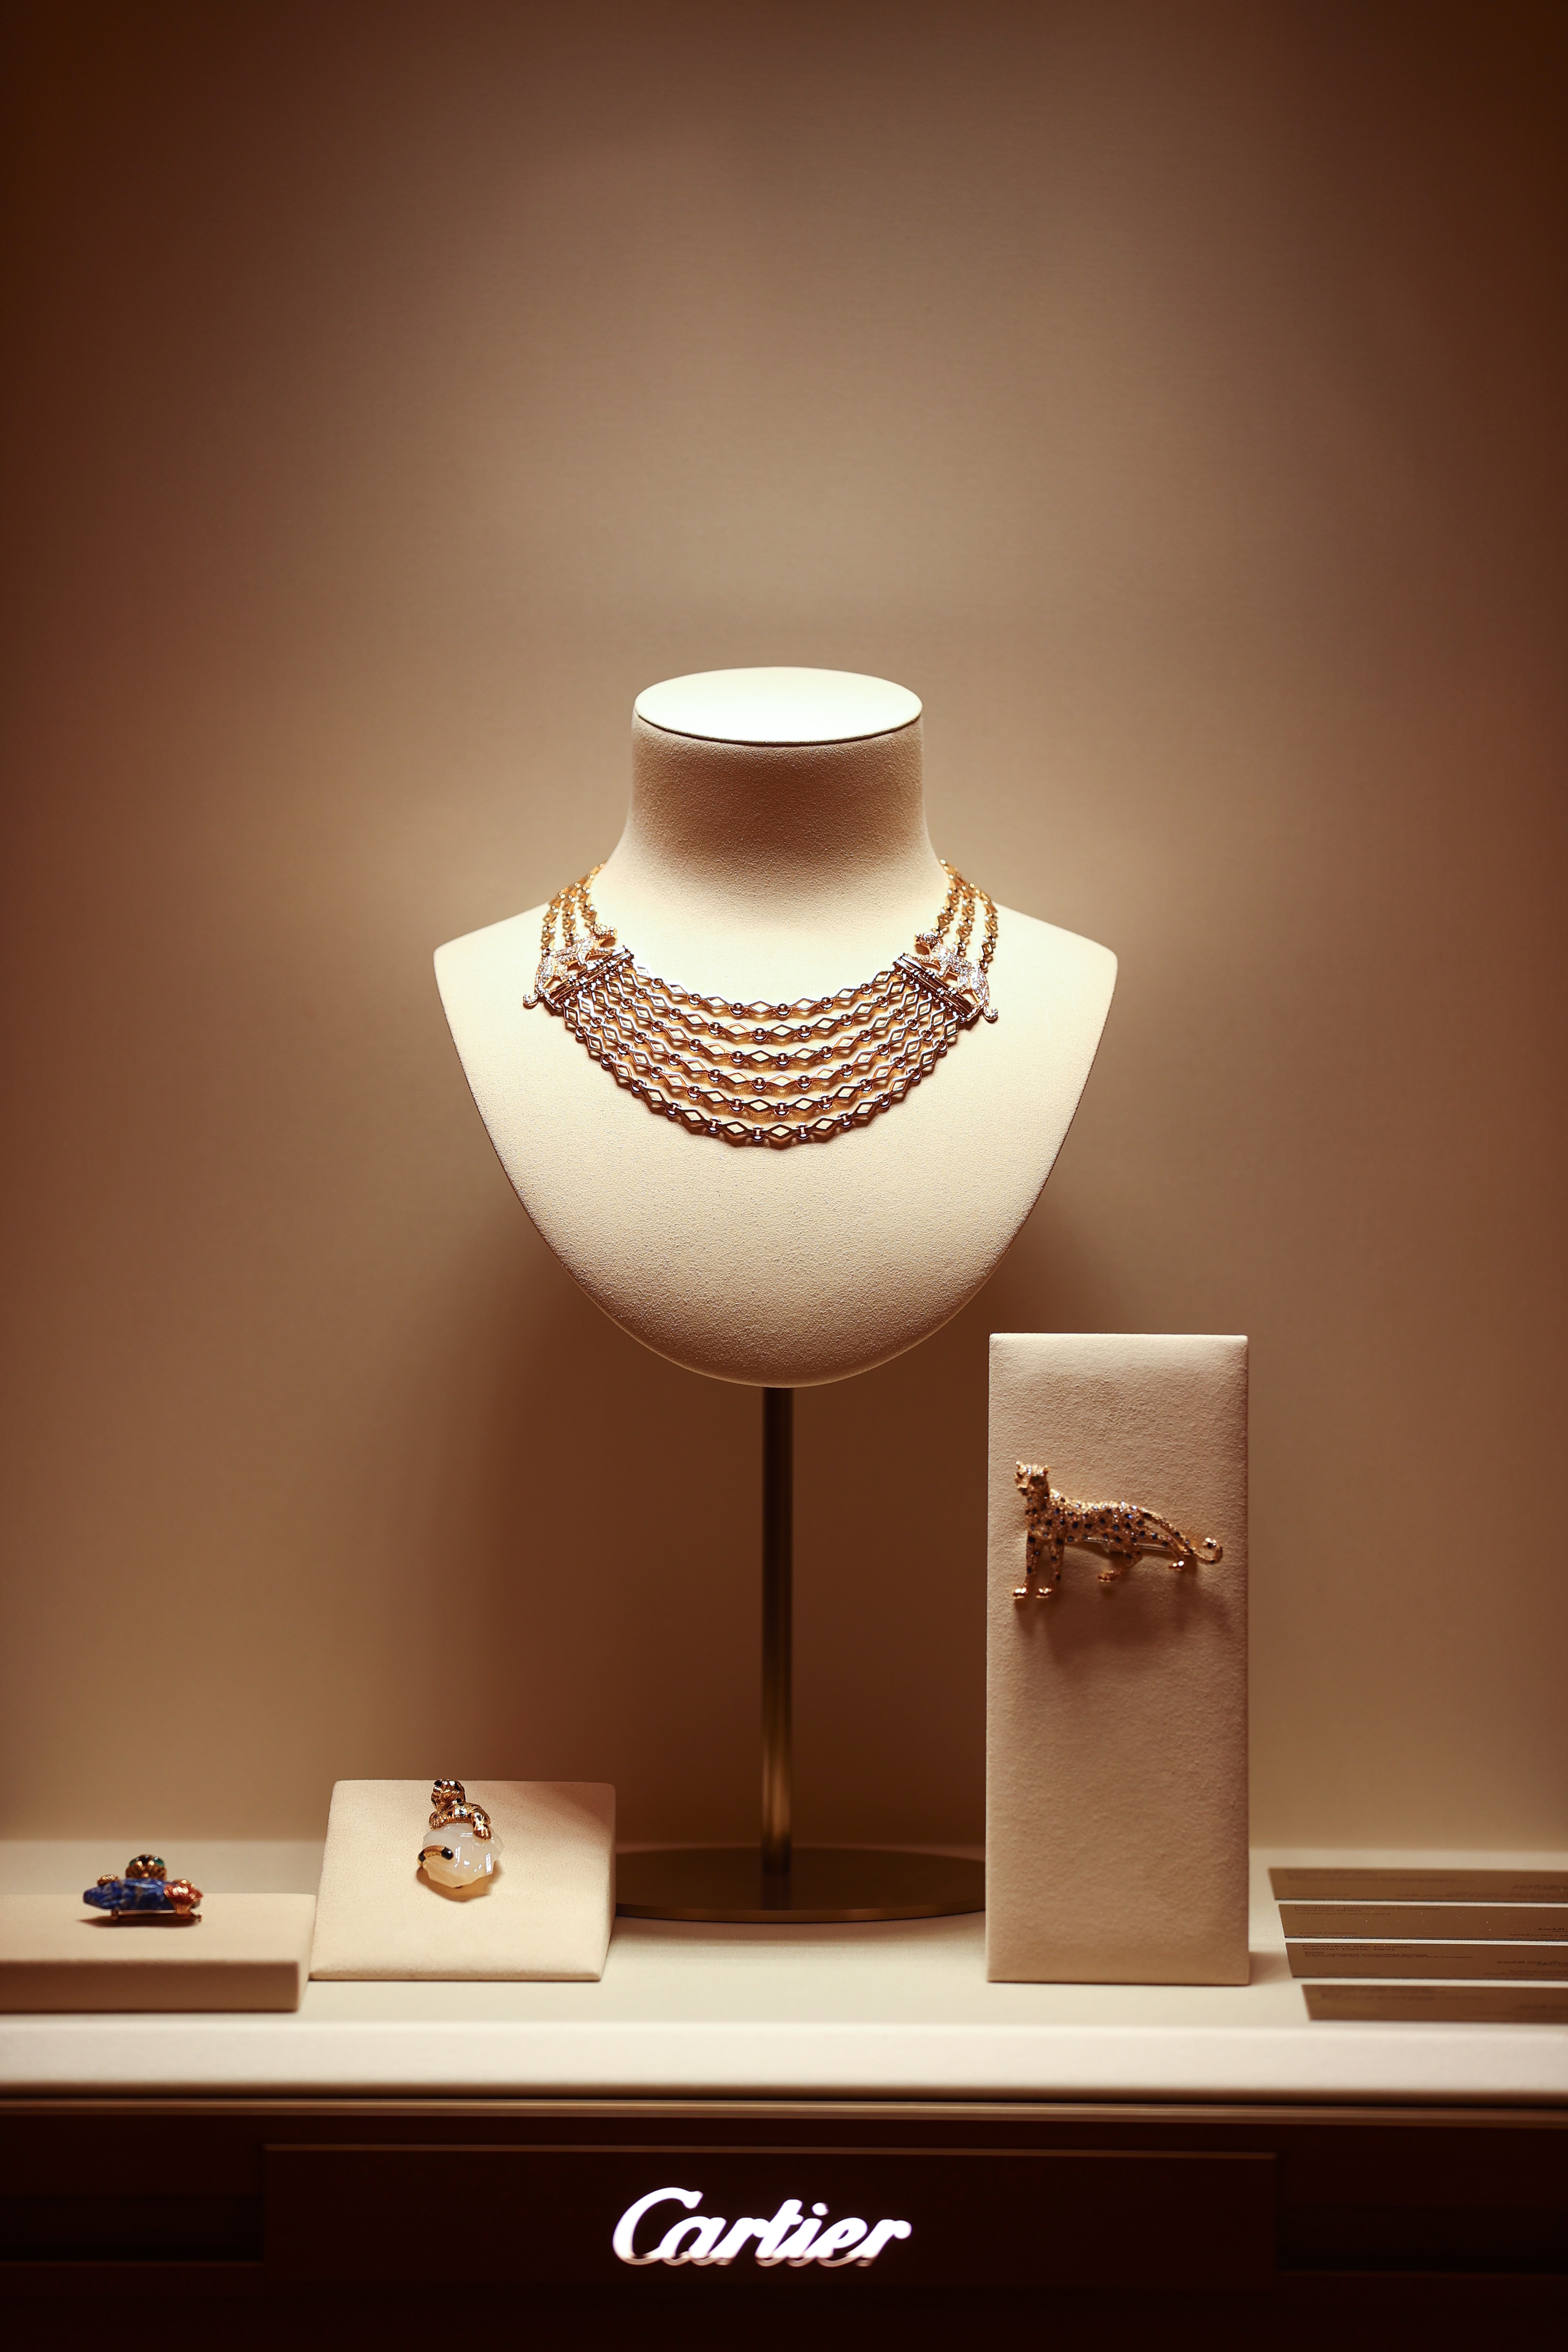  معرض مميز لمجوهرات كارتييه Cartier الفاخرة في متجرها بالفيصلية في المملكة العربية السعودية